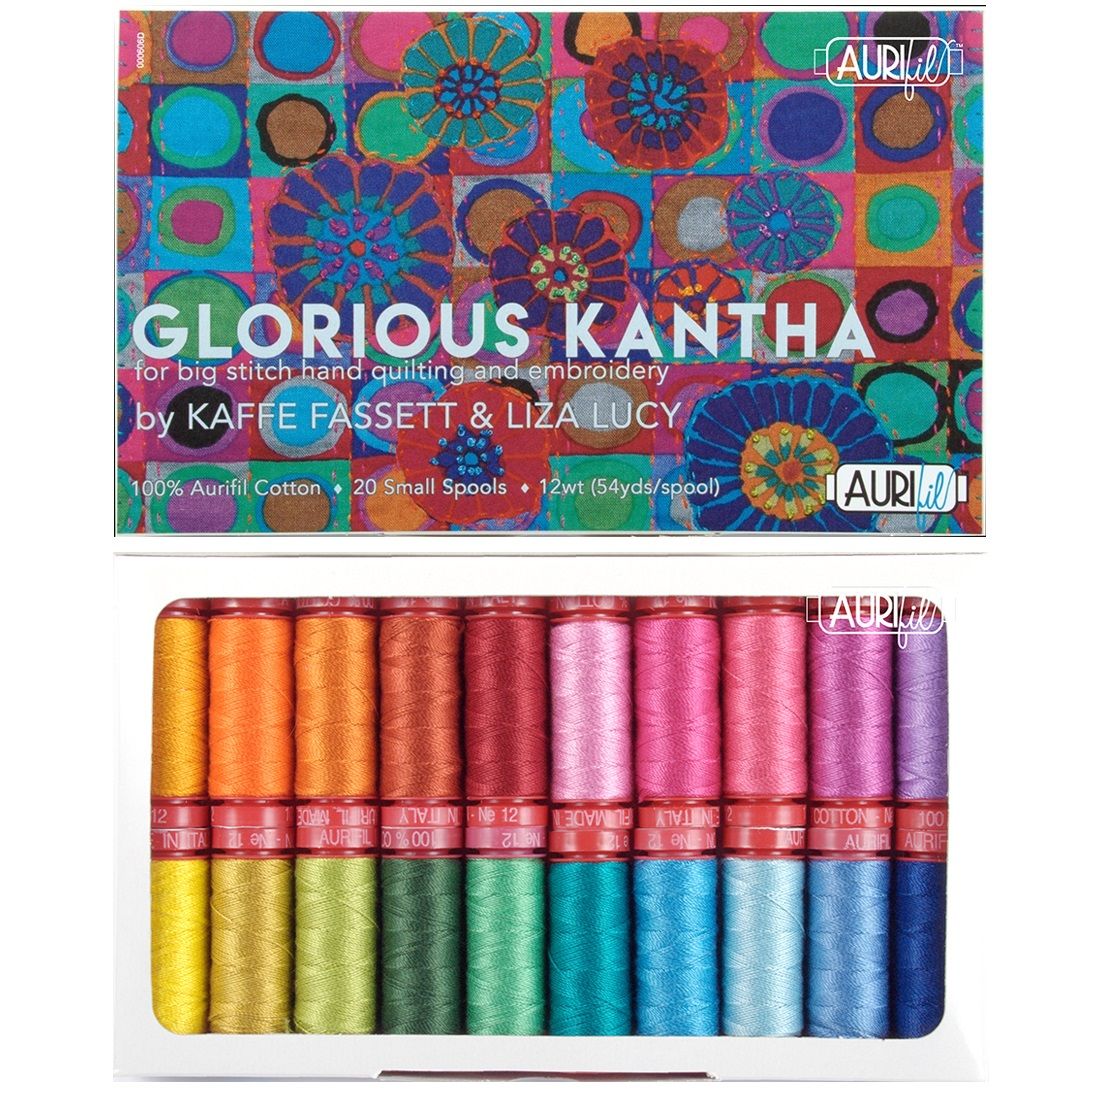 Glorious Kantha by Kaffe Fassett & Liza Lucy - Aurifil Cotton 12wt